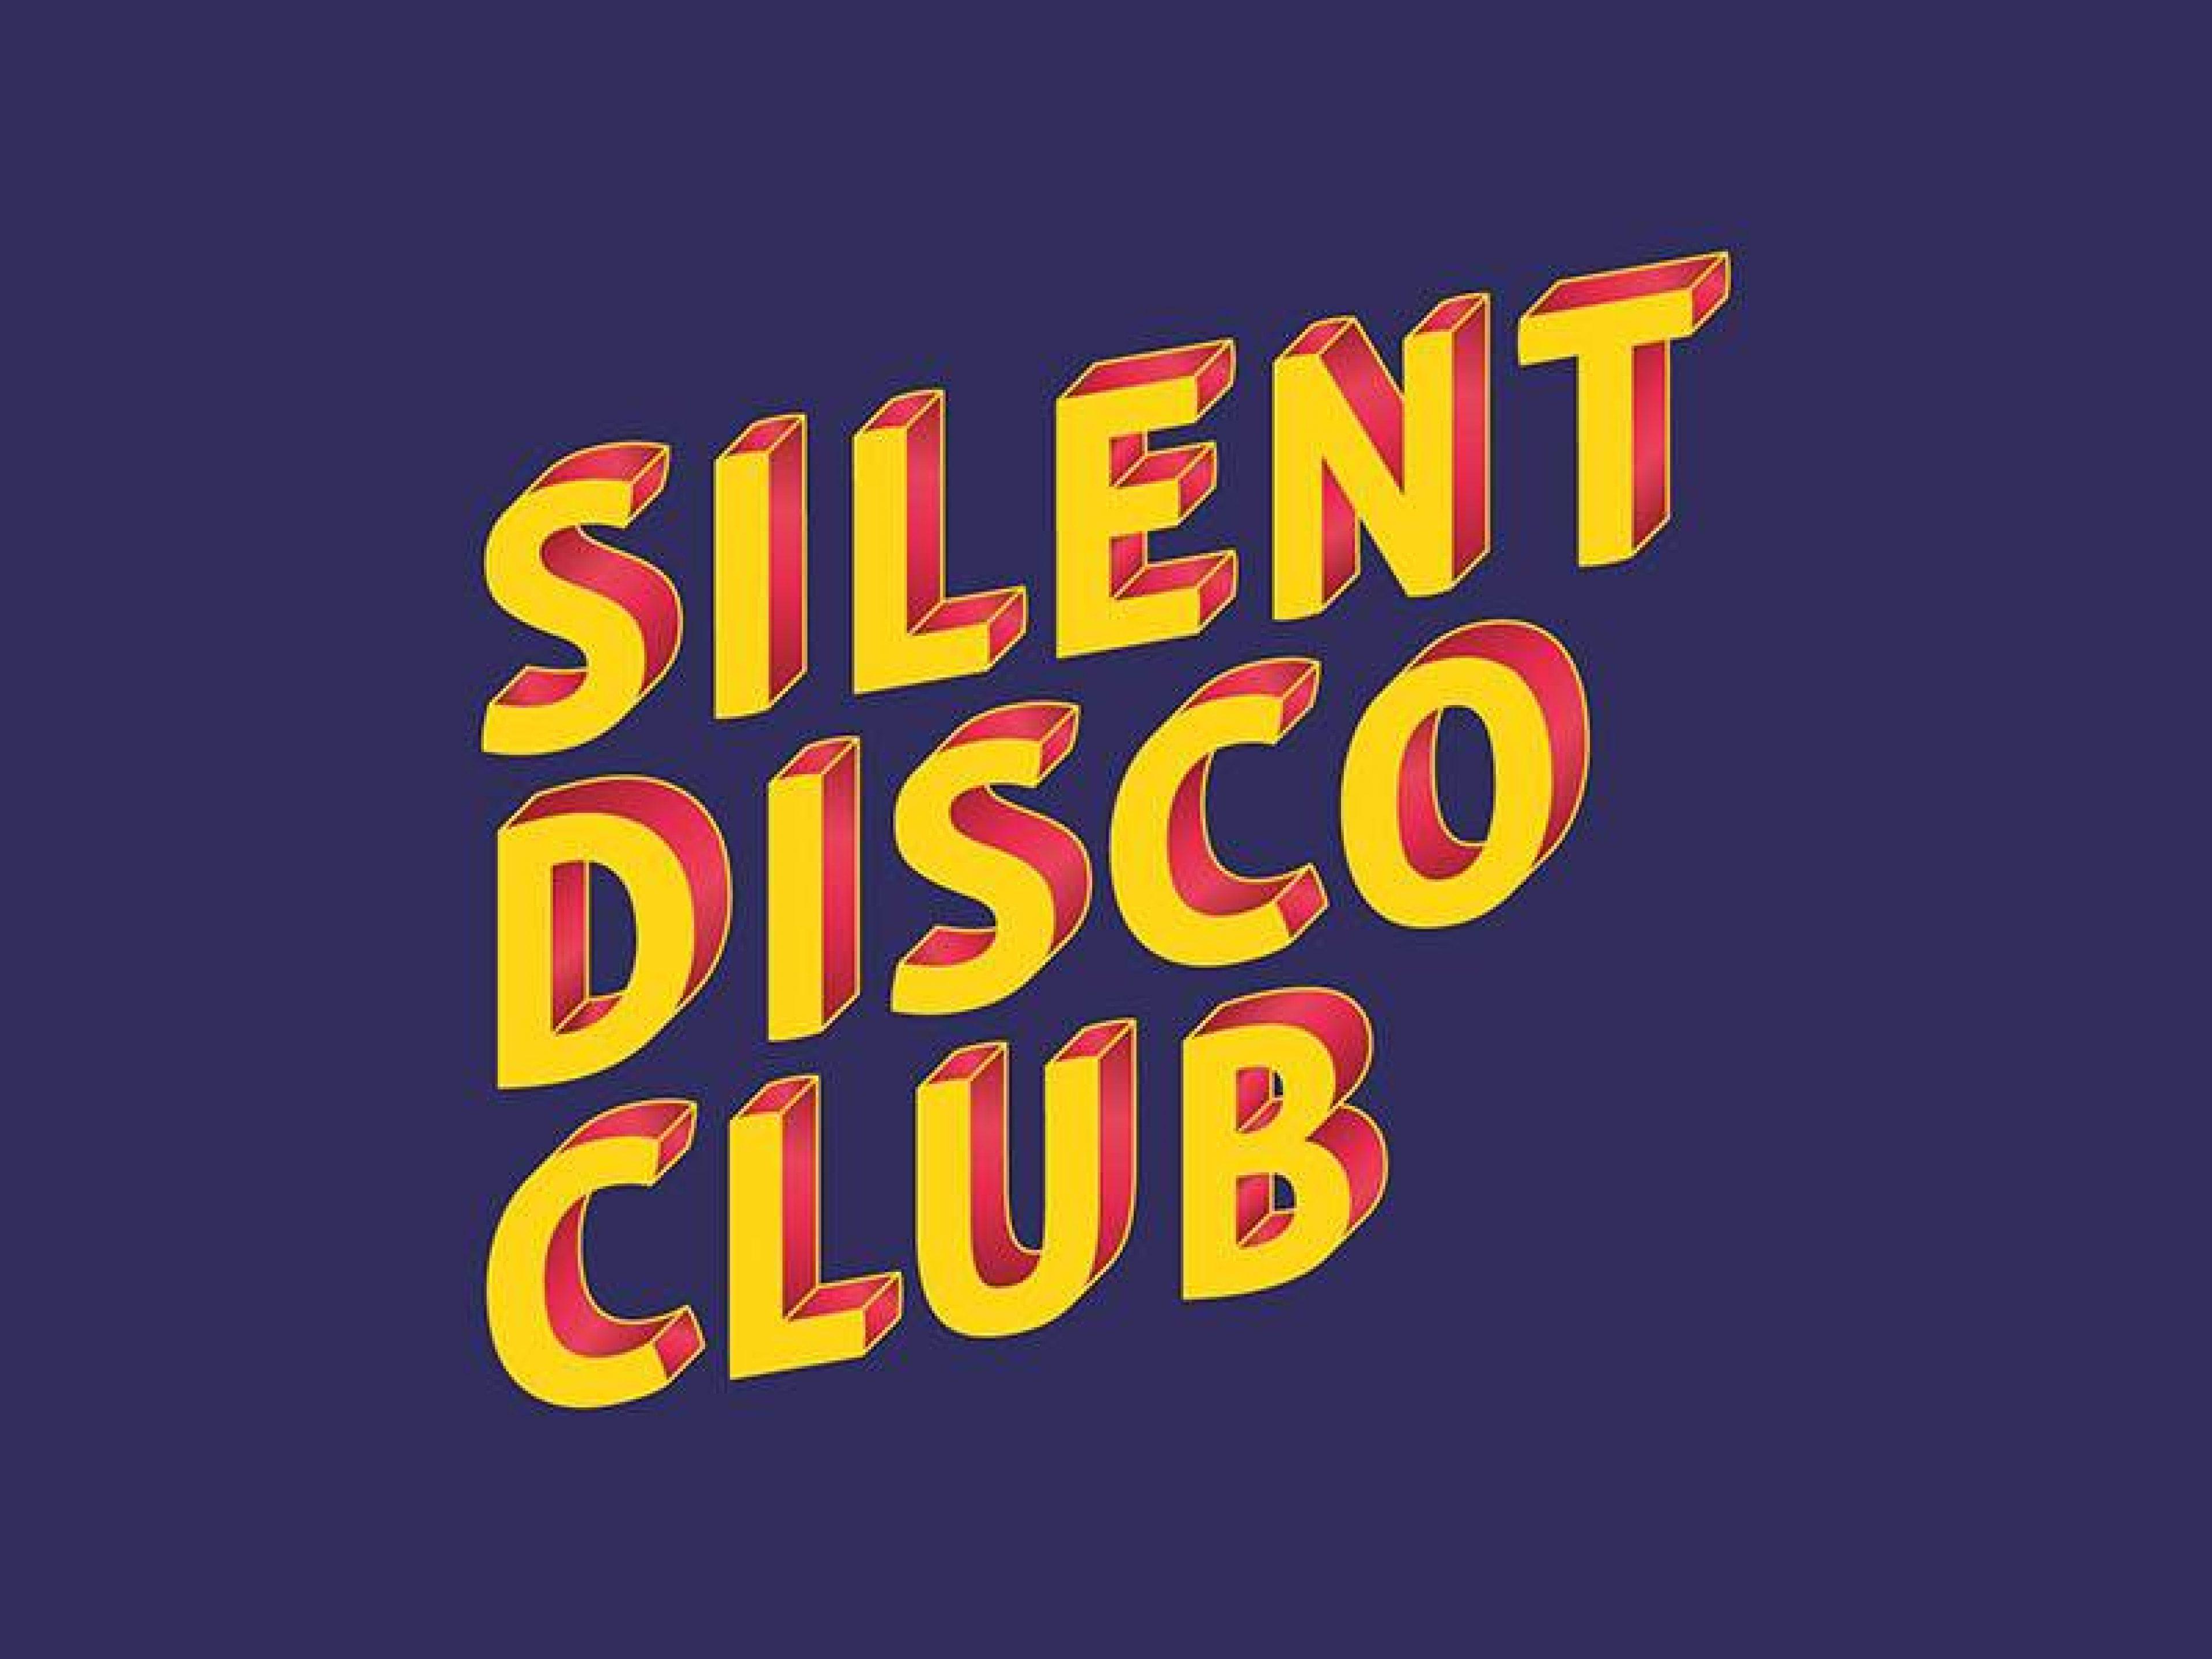 Silent disco club